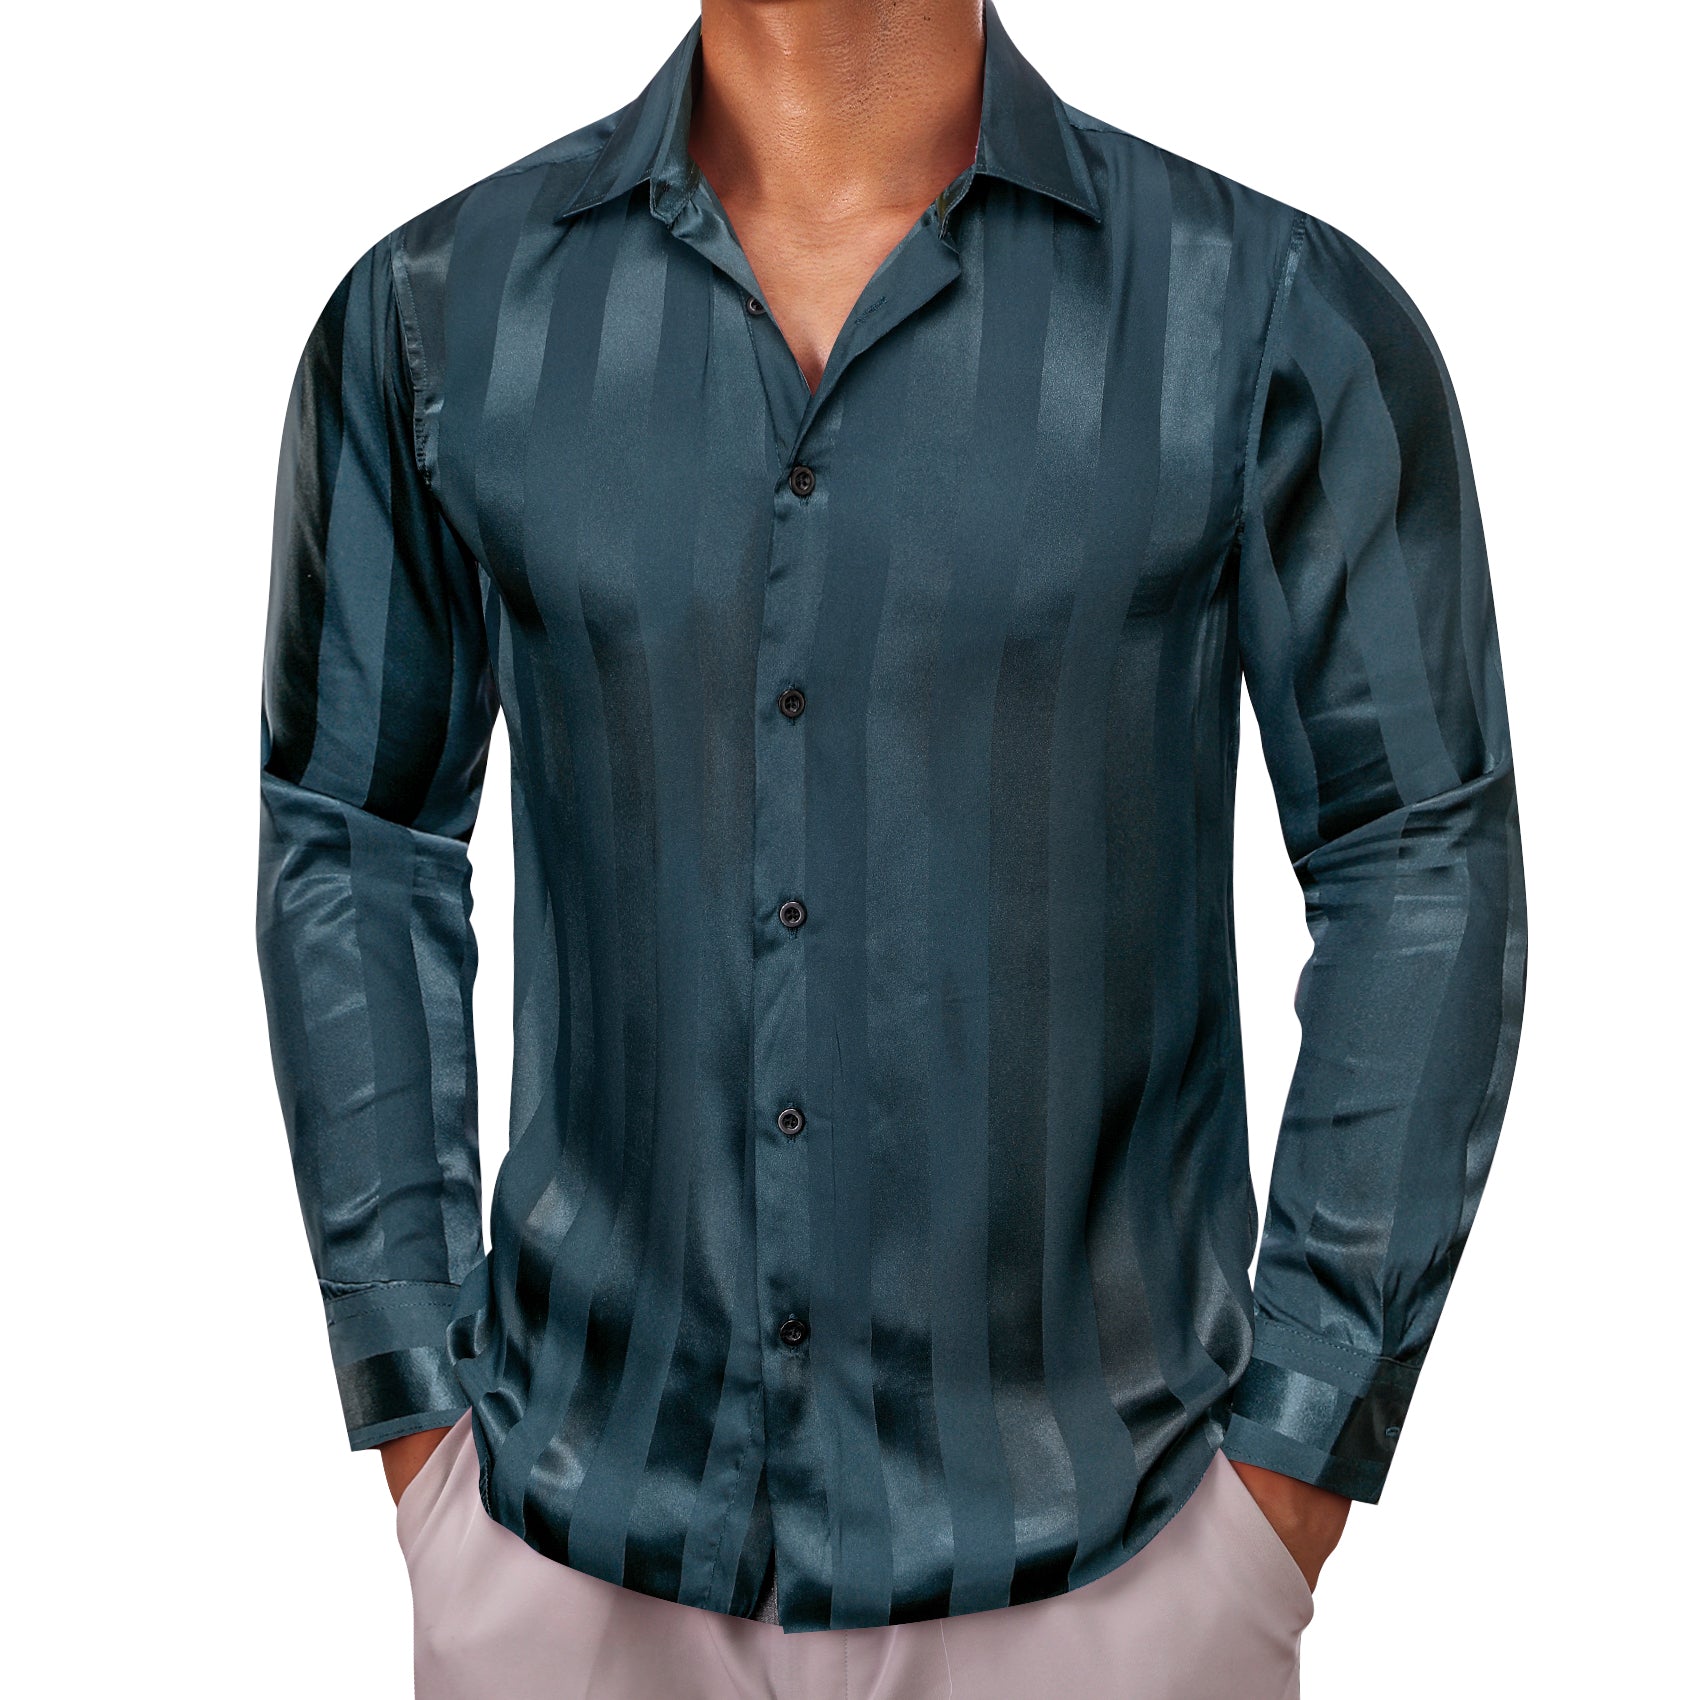 Barry.wang Oriental Blue Striped Silk Men's Shirt